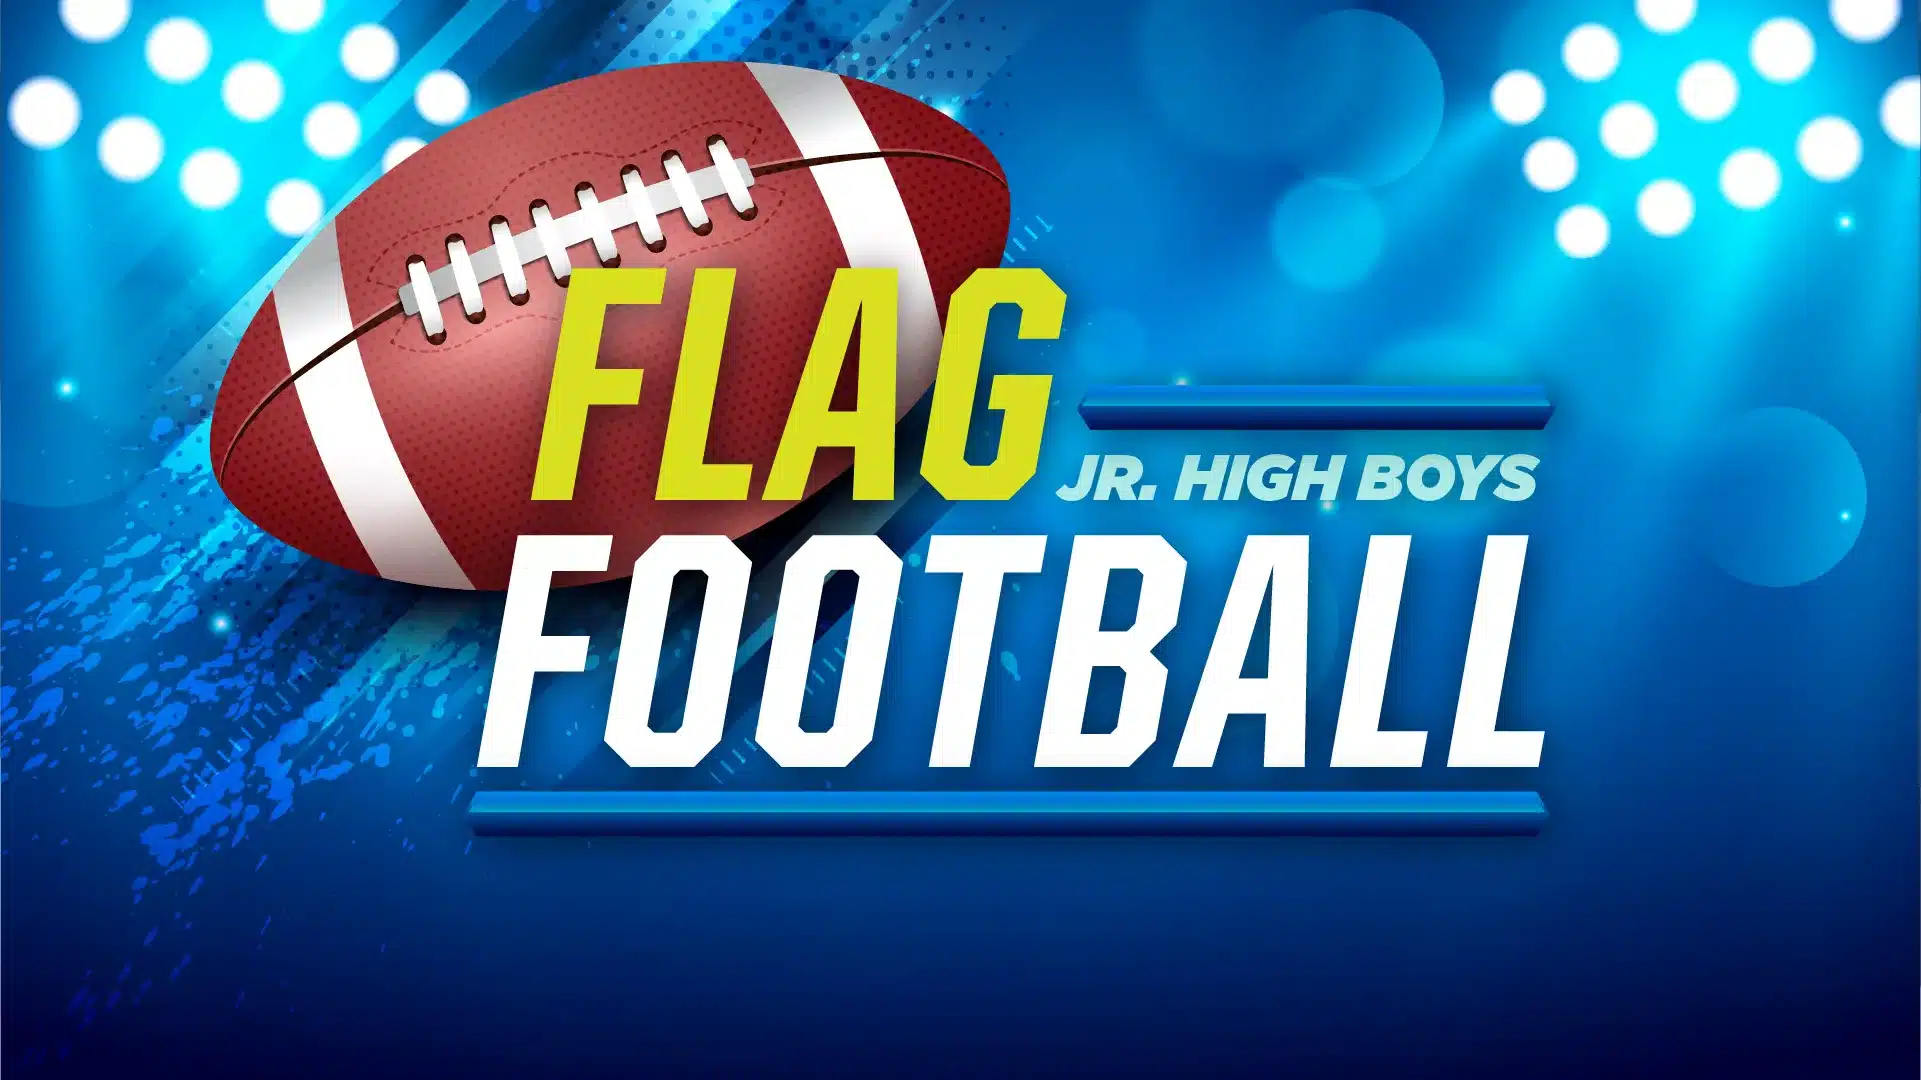 Jr. High Boys Flag Football